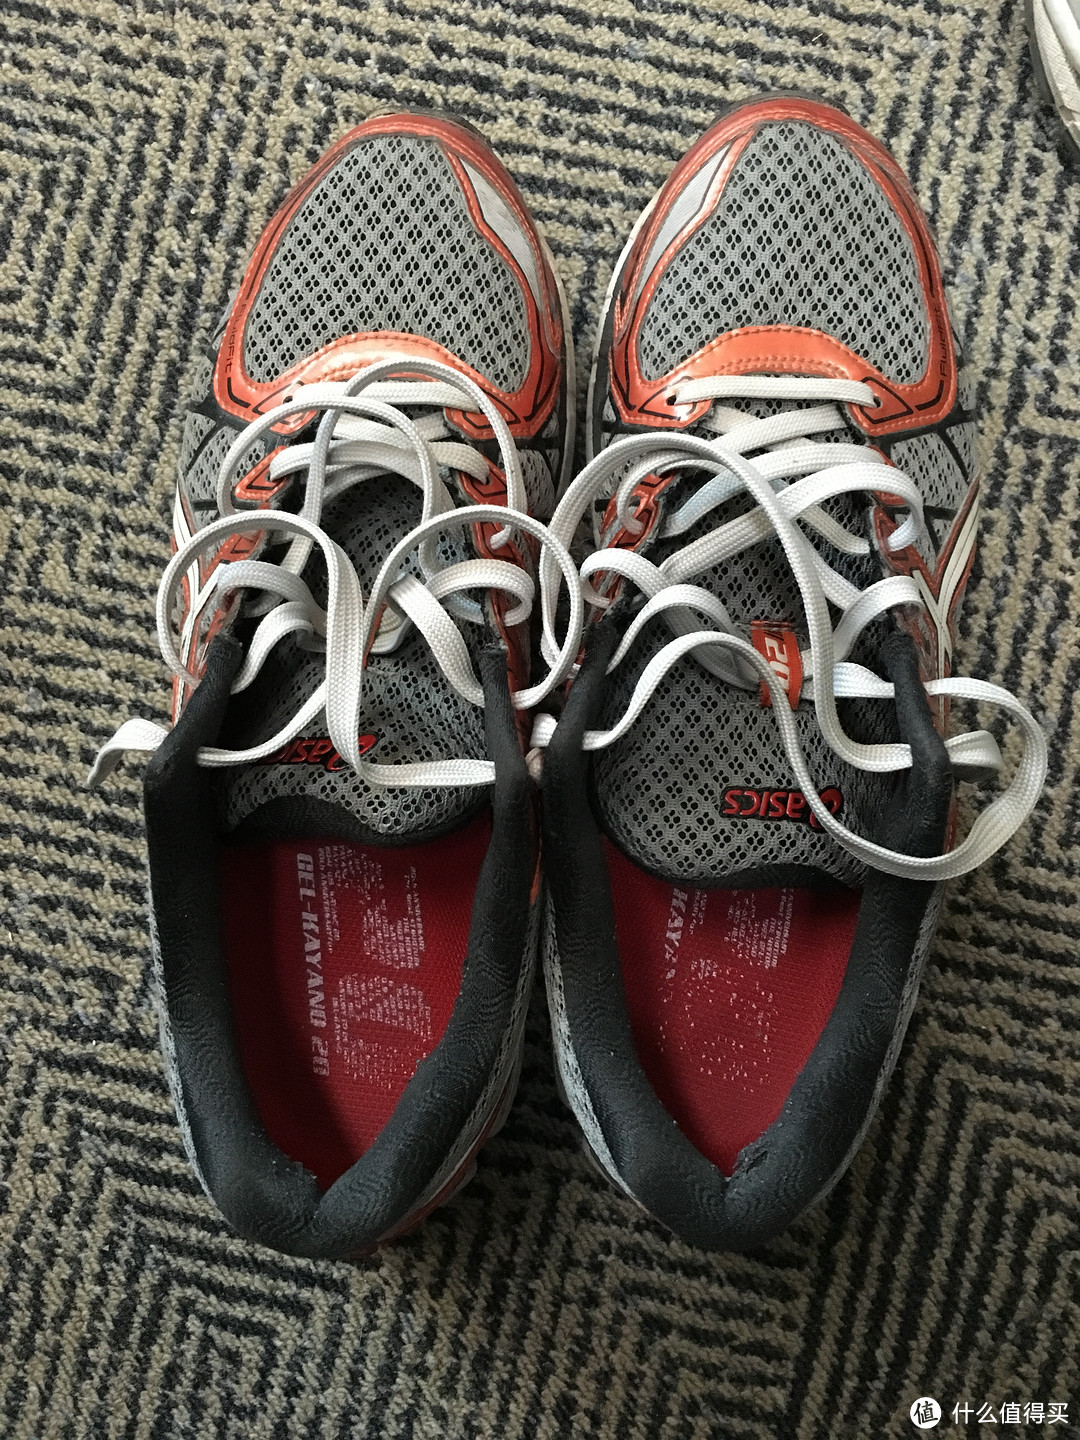 分享几双跑步鞋的个人长期穿着体验